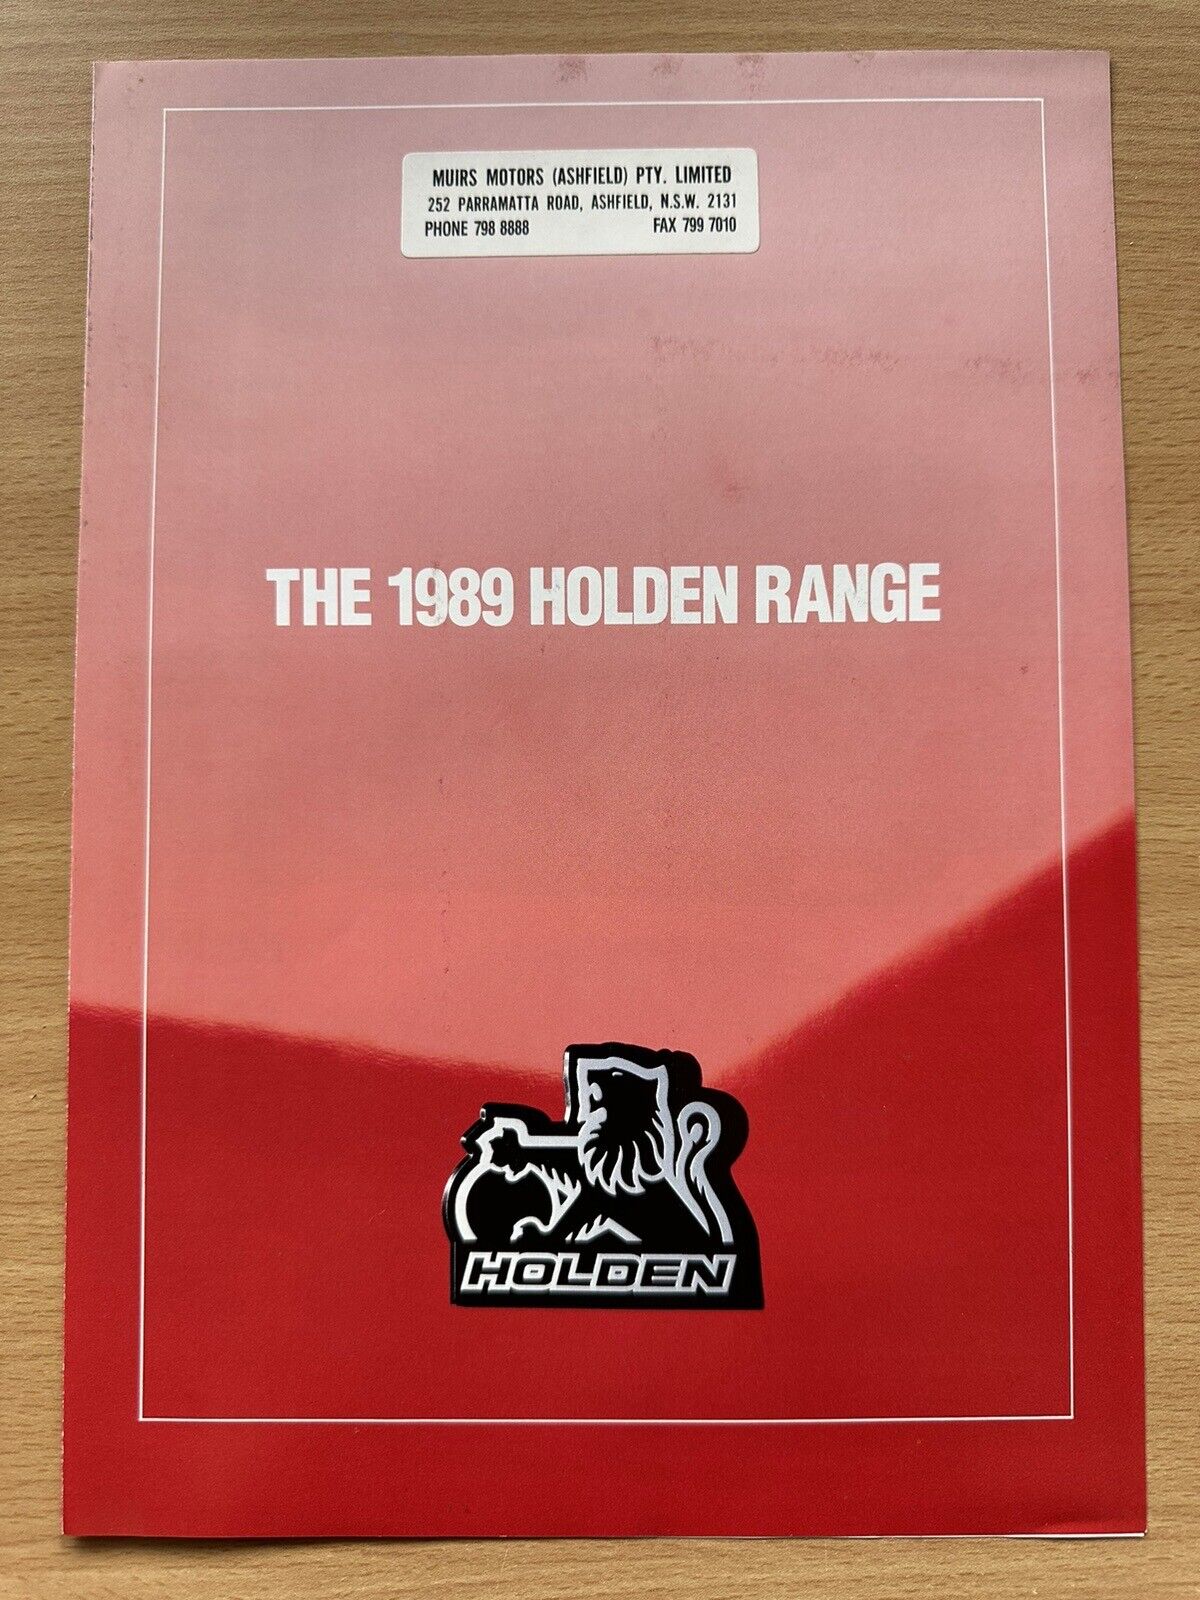 1989 Holden Range original Australian sales brochure